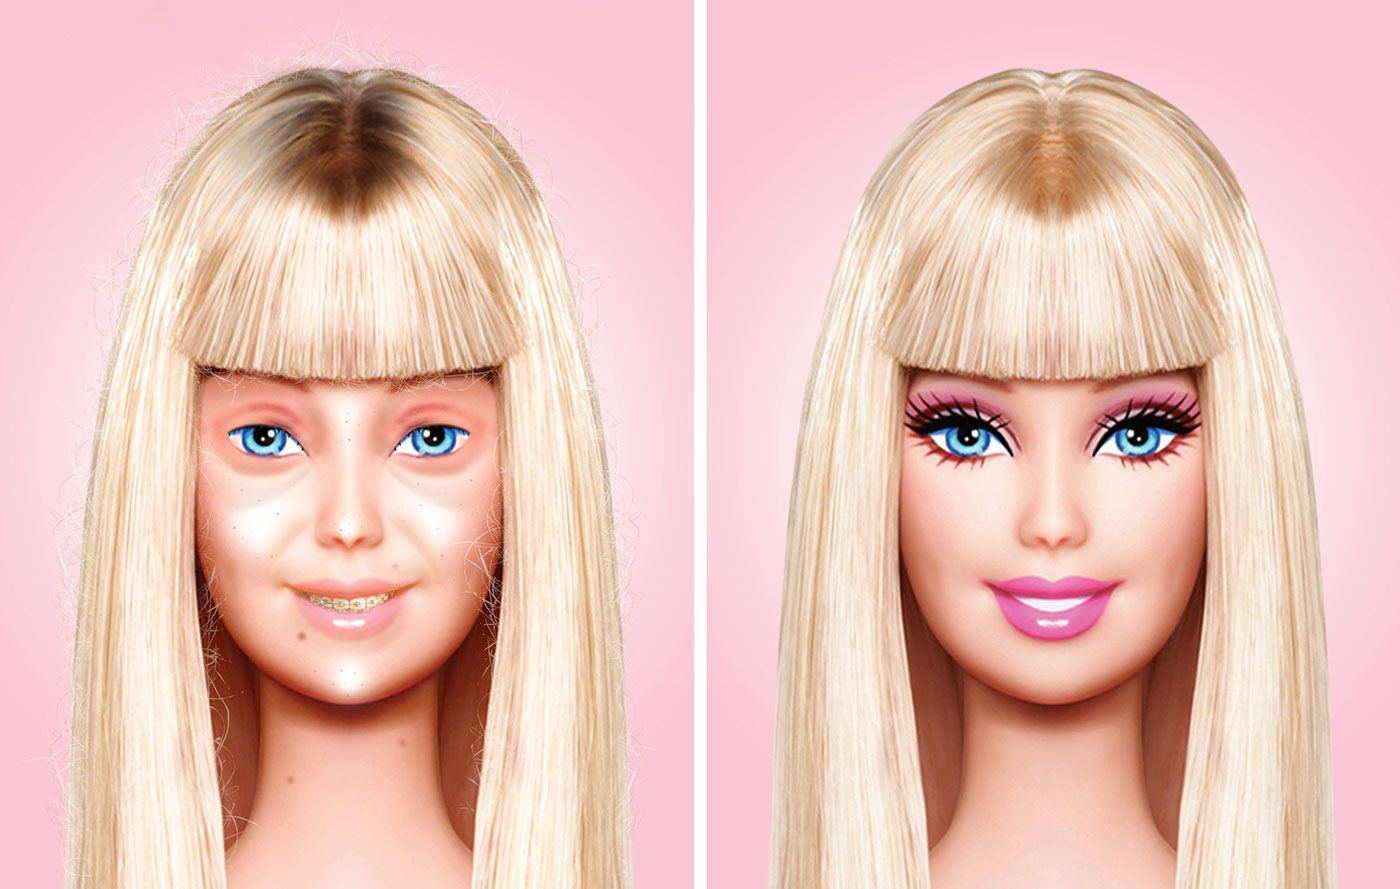 Barbie para que edad es